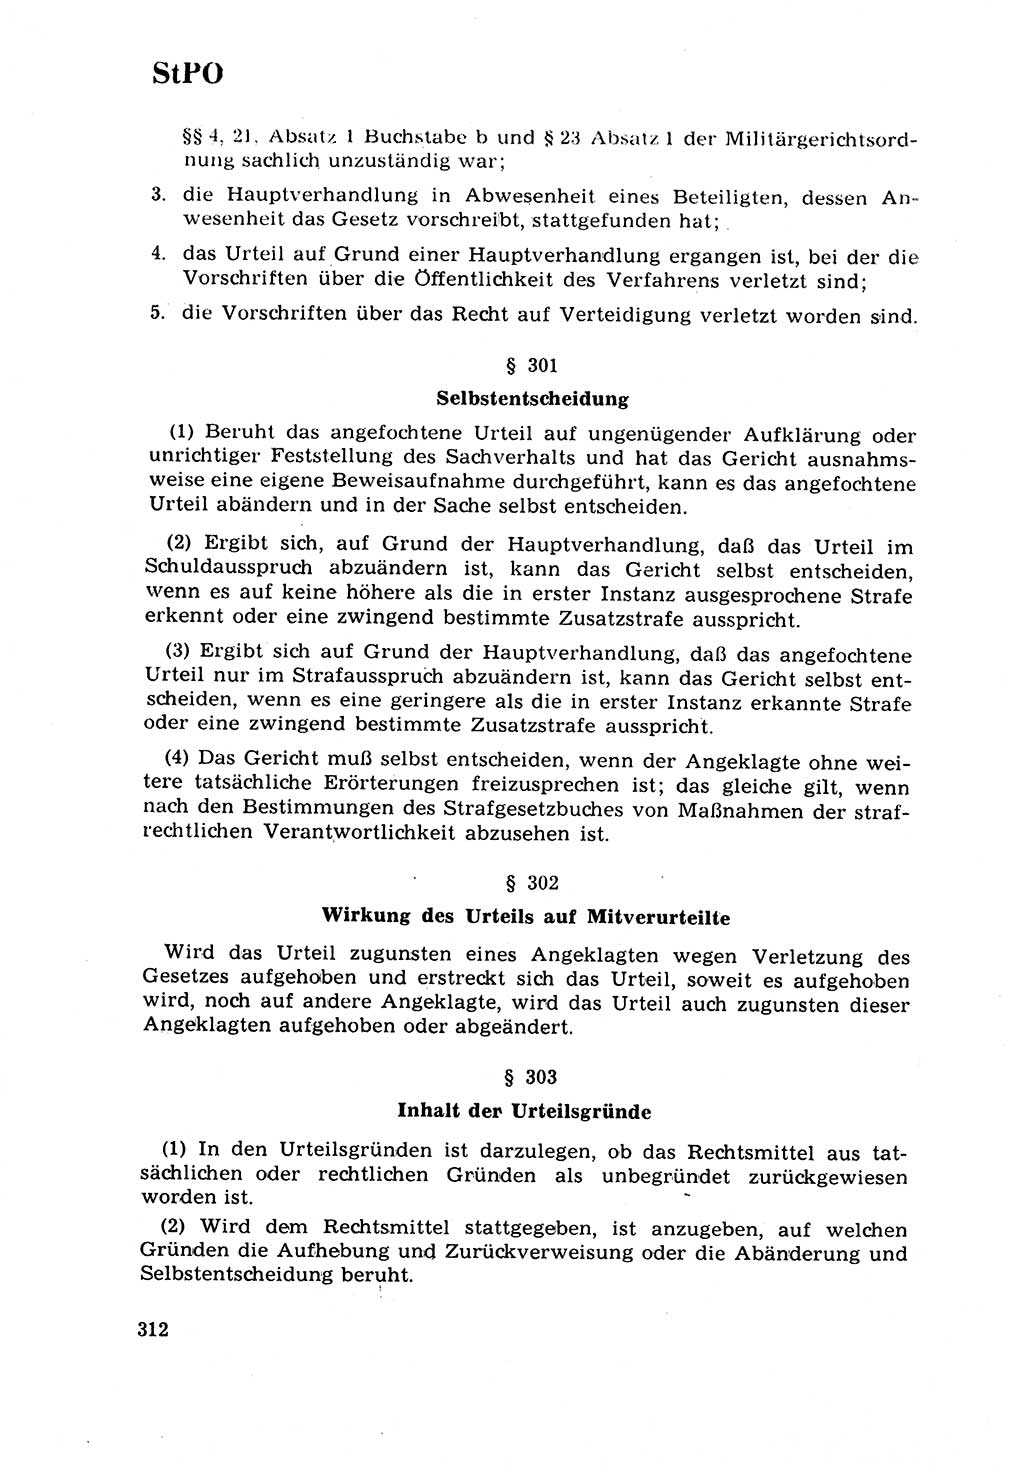 Strafrecht [Deutsche Demokratische Republik (DDR)] 1968, Seite 312 (Strafr. DDR 1968, S. 312)